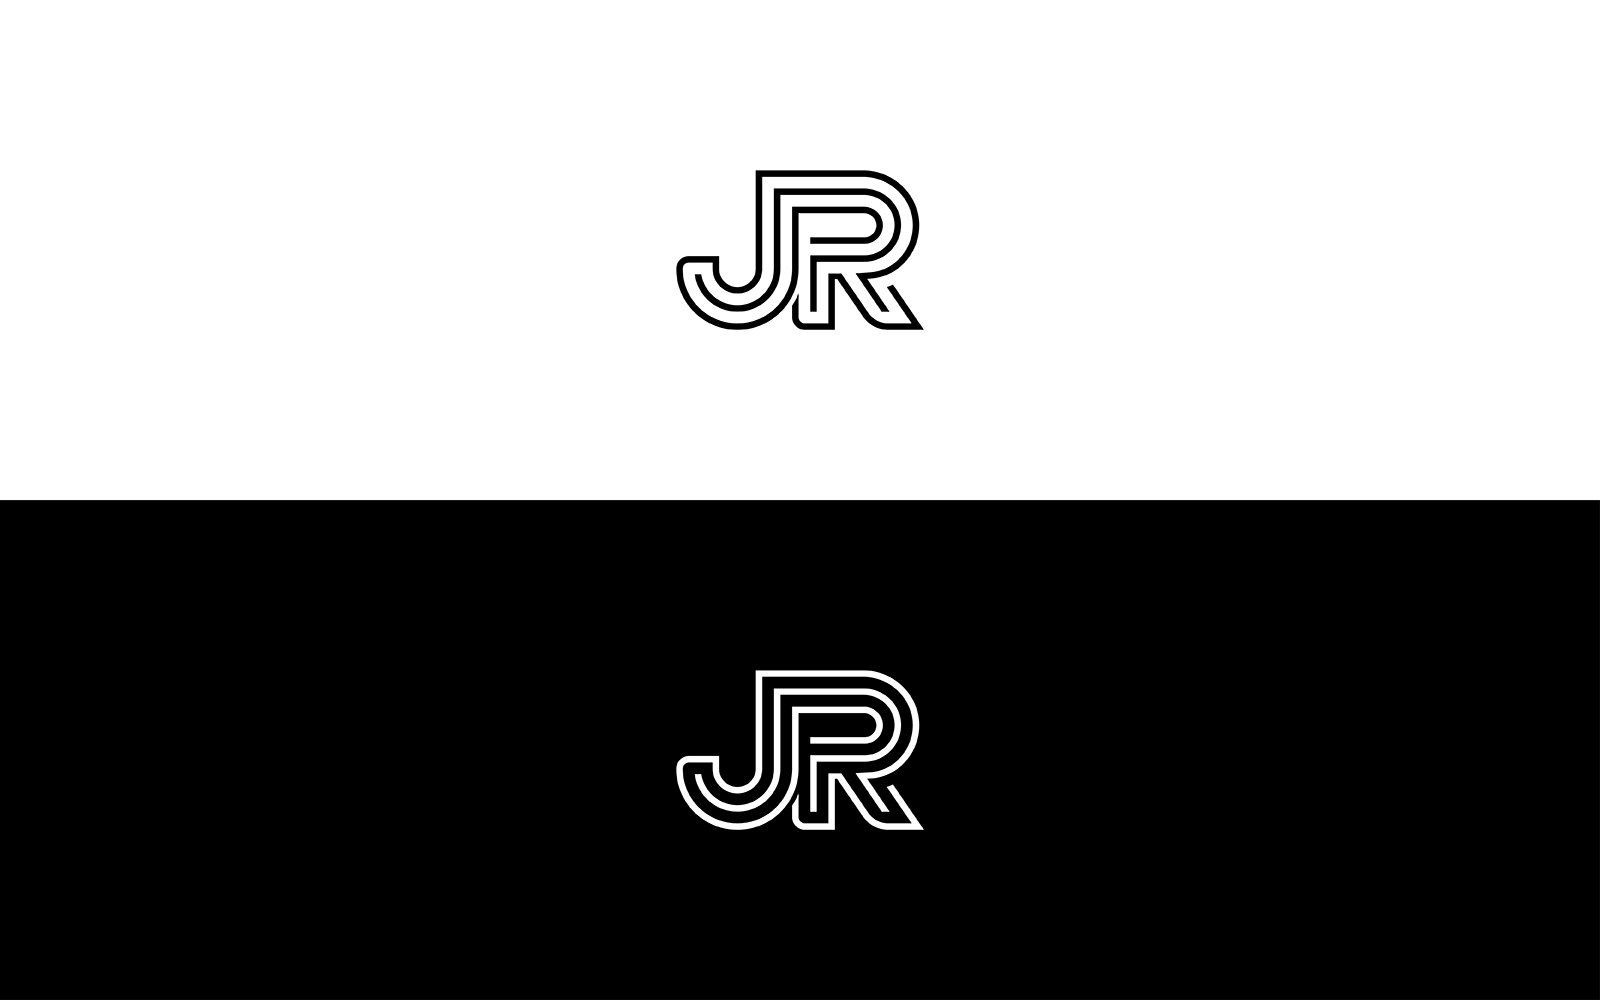 JR letter logo design or rj logo, jr logo